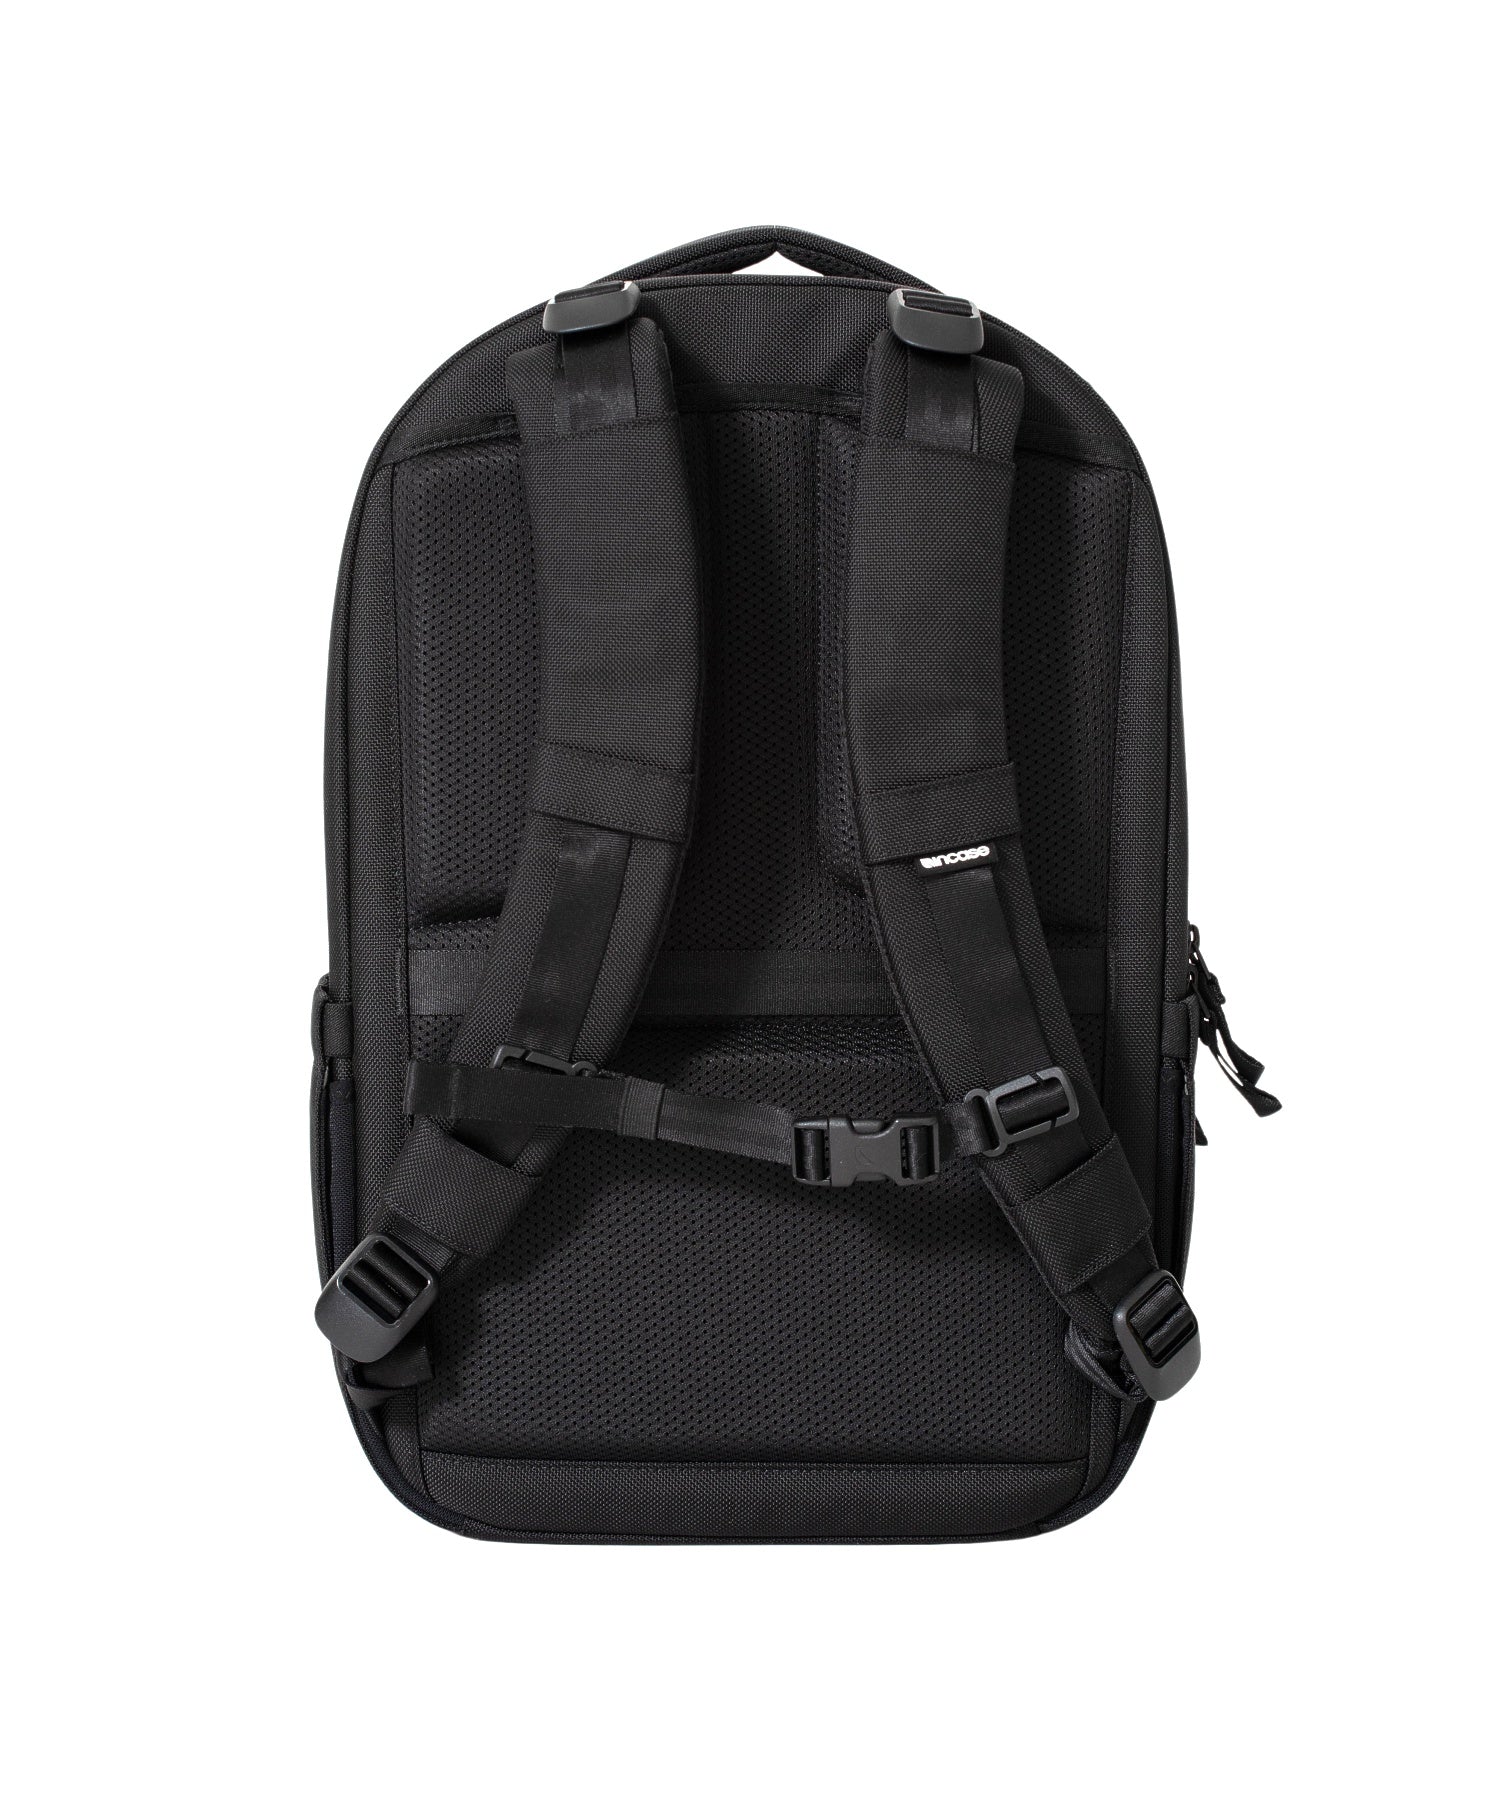 Incase Tracks Backpack 25L-Black